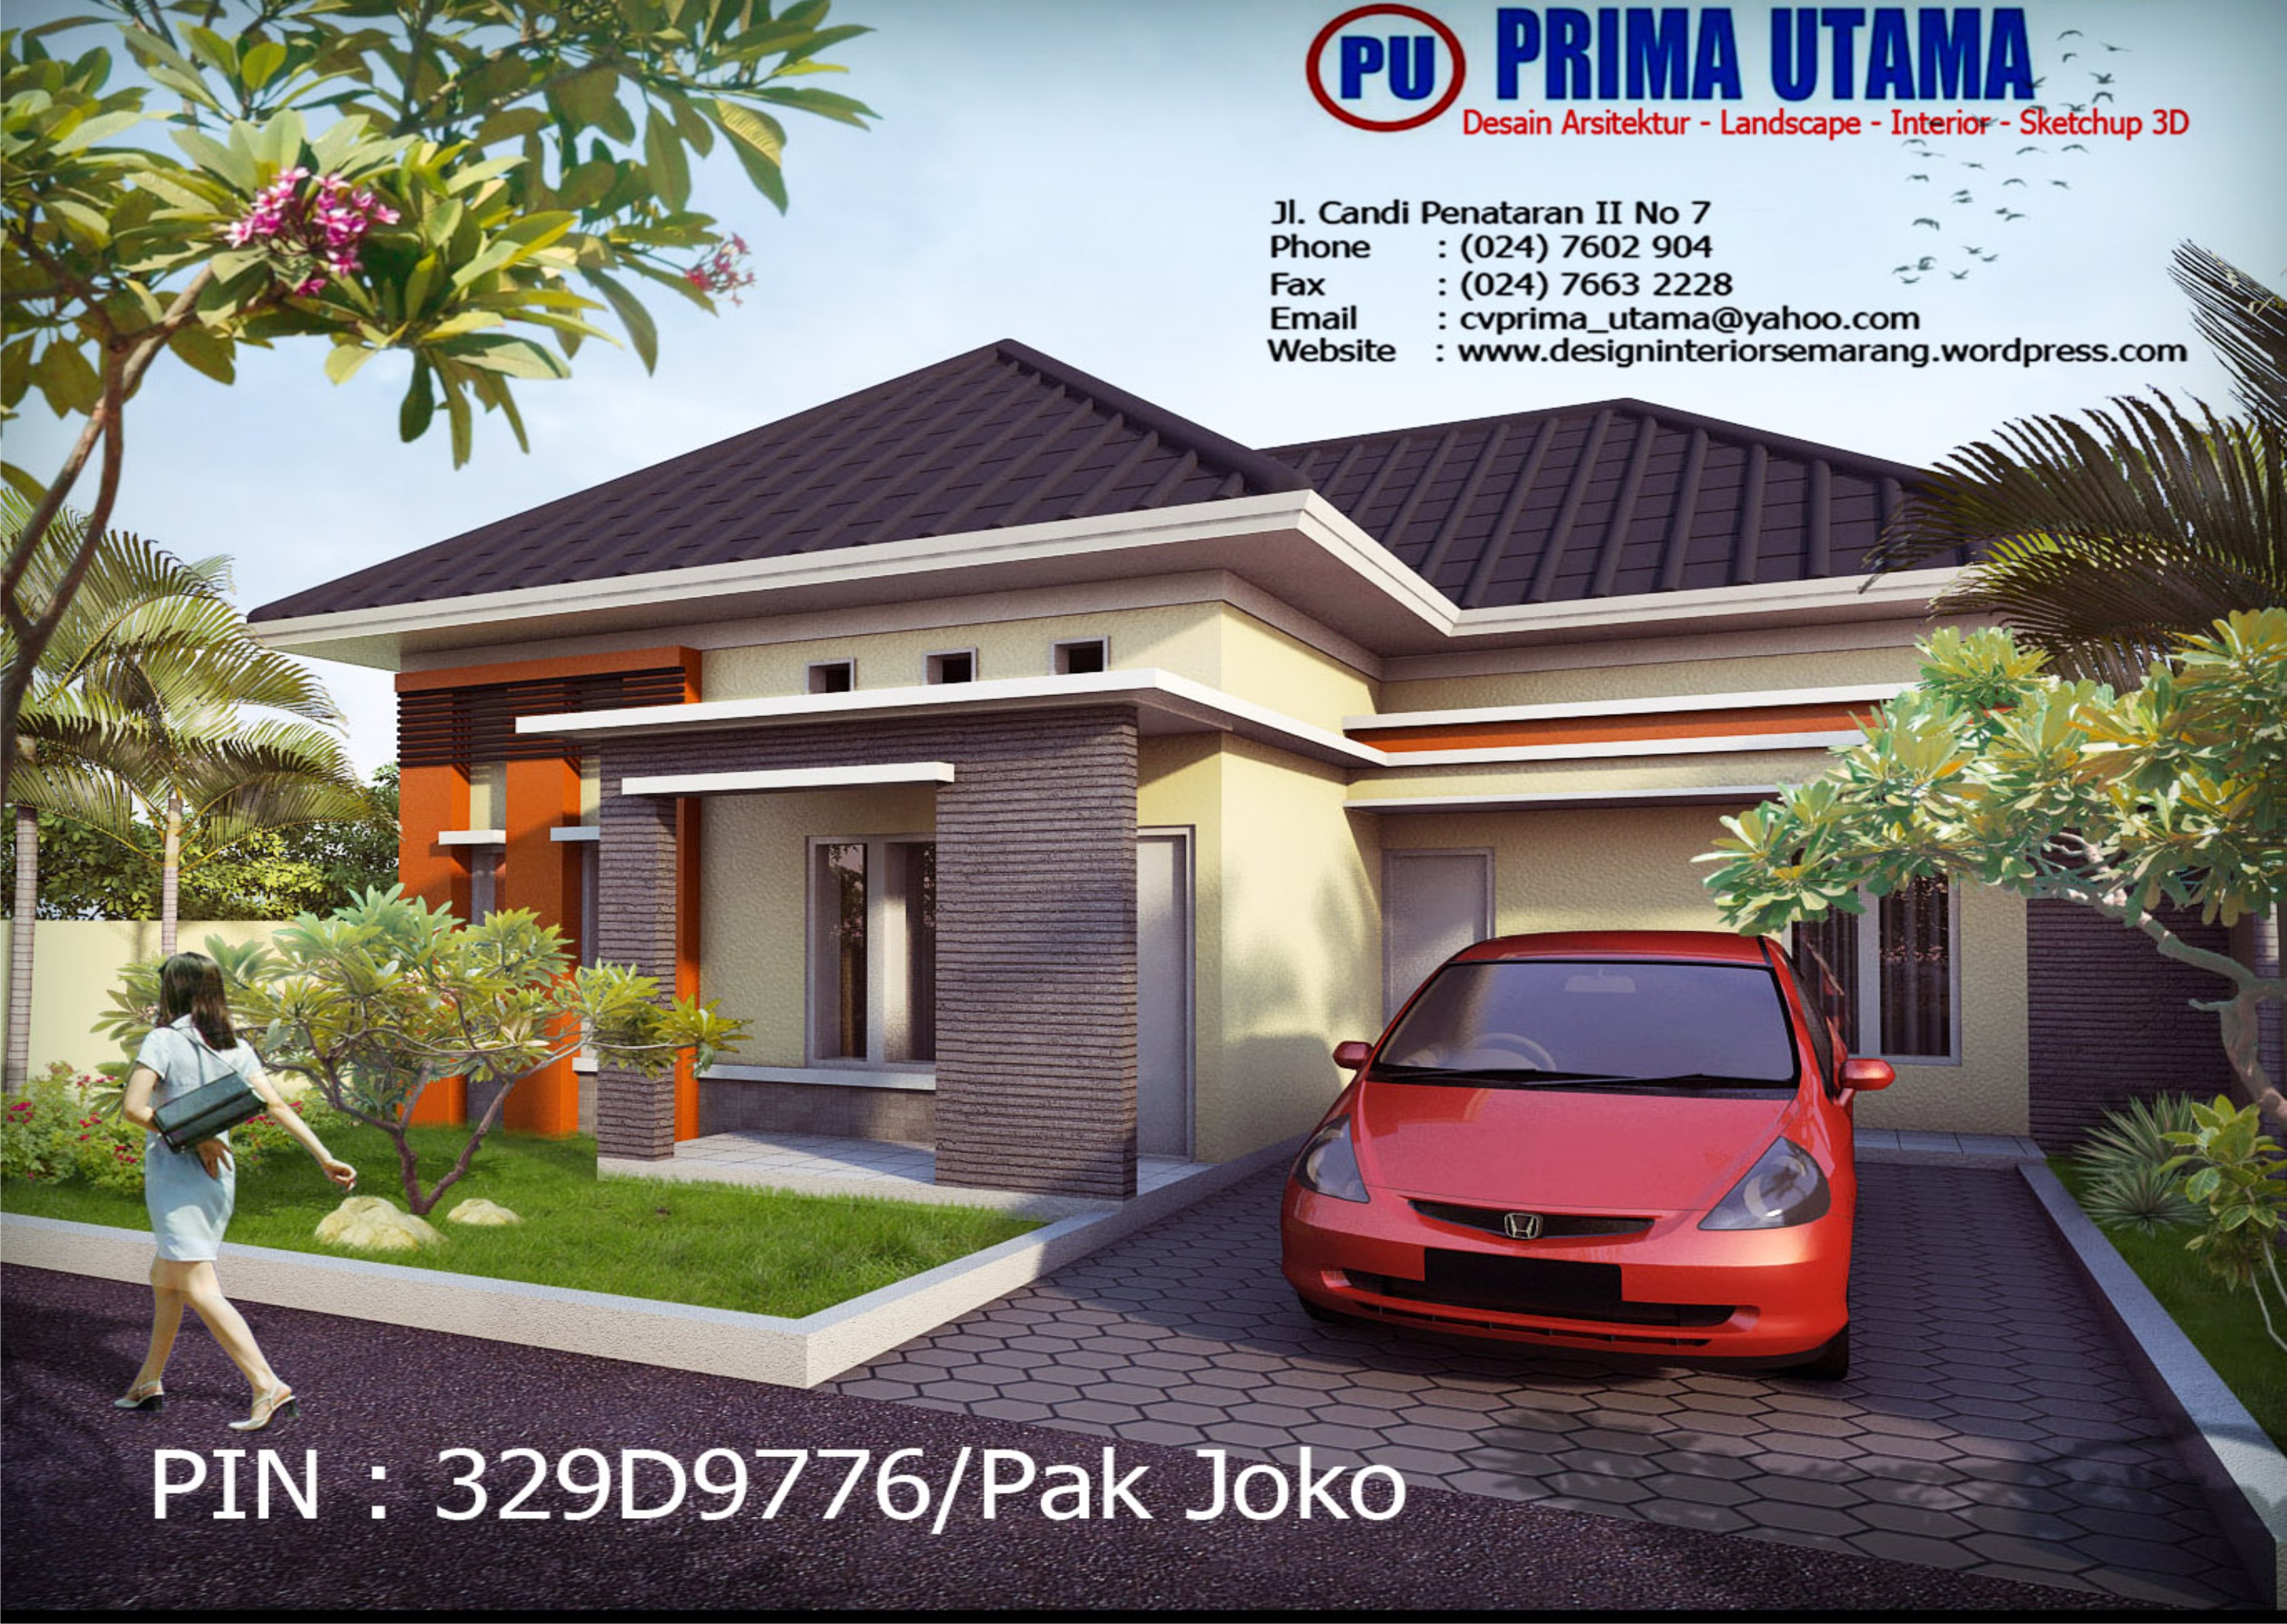 Jasa Desain Gambar Rumah 3D di Semarang Jawa Tengah | CV. PRIMA UTAMA